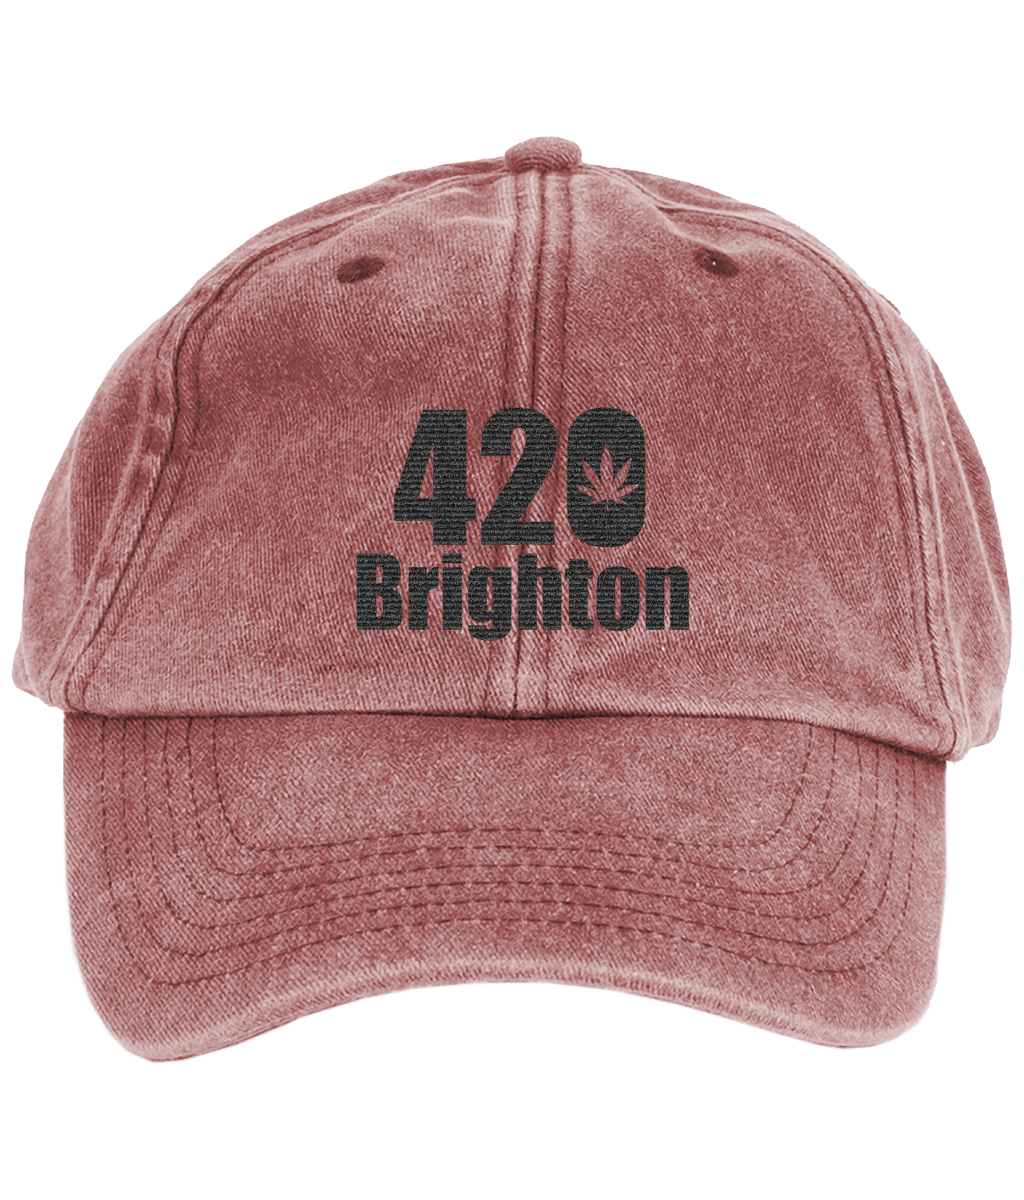 420 Brighton logo Vintage Low Profile Cap